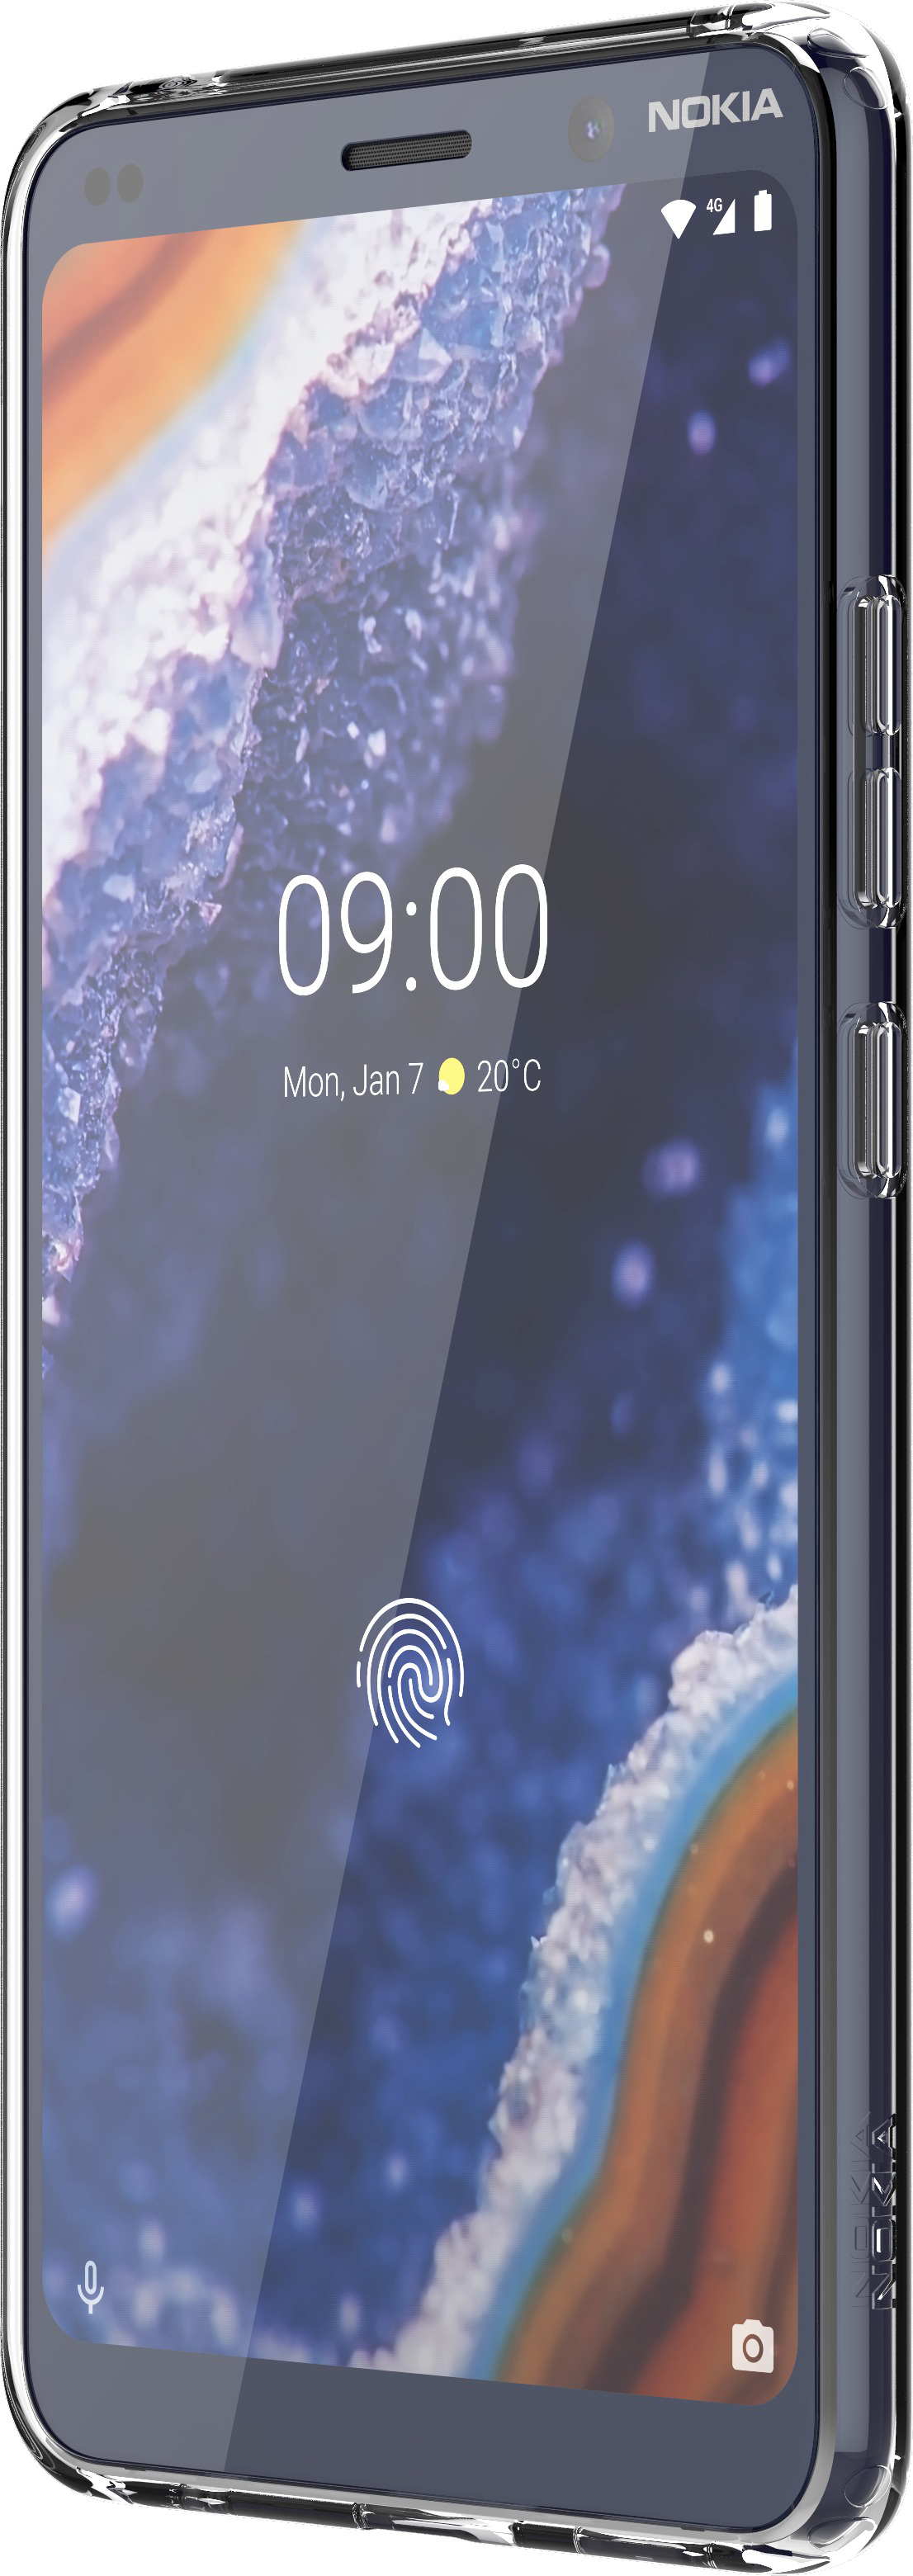 Nokia, Clear Premium CC-190, NOKIA PureView, Transparent 9 Backcover, Case